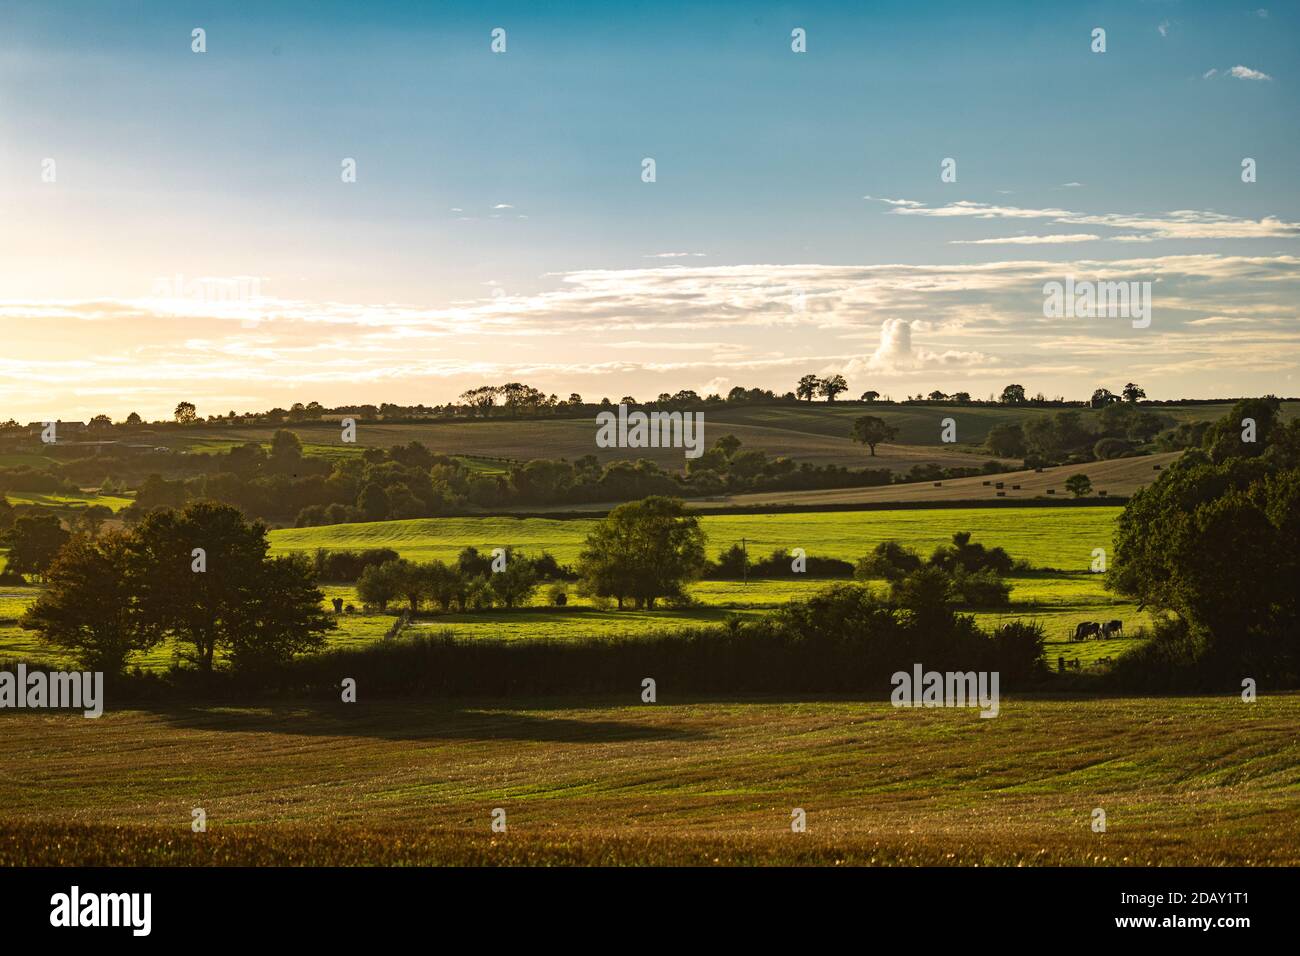 Verano vista cálida de las tierras agrícolas locales en Oxfordshire, tiempo de cosecha campos de granja paisaje con árboles y vacas en la distancia, día soleado con nubes suaves Foto de stock